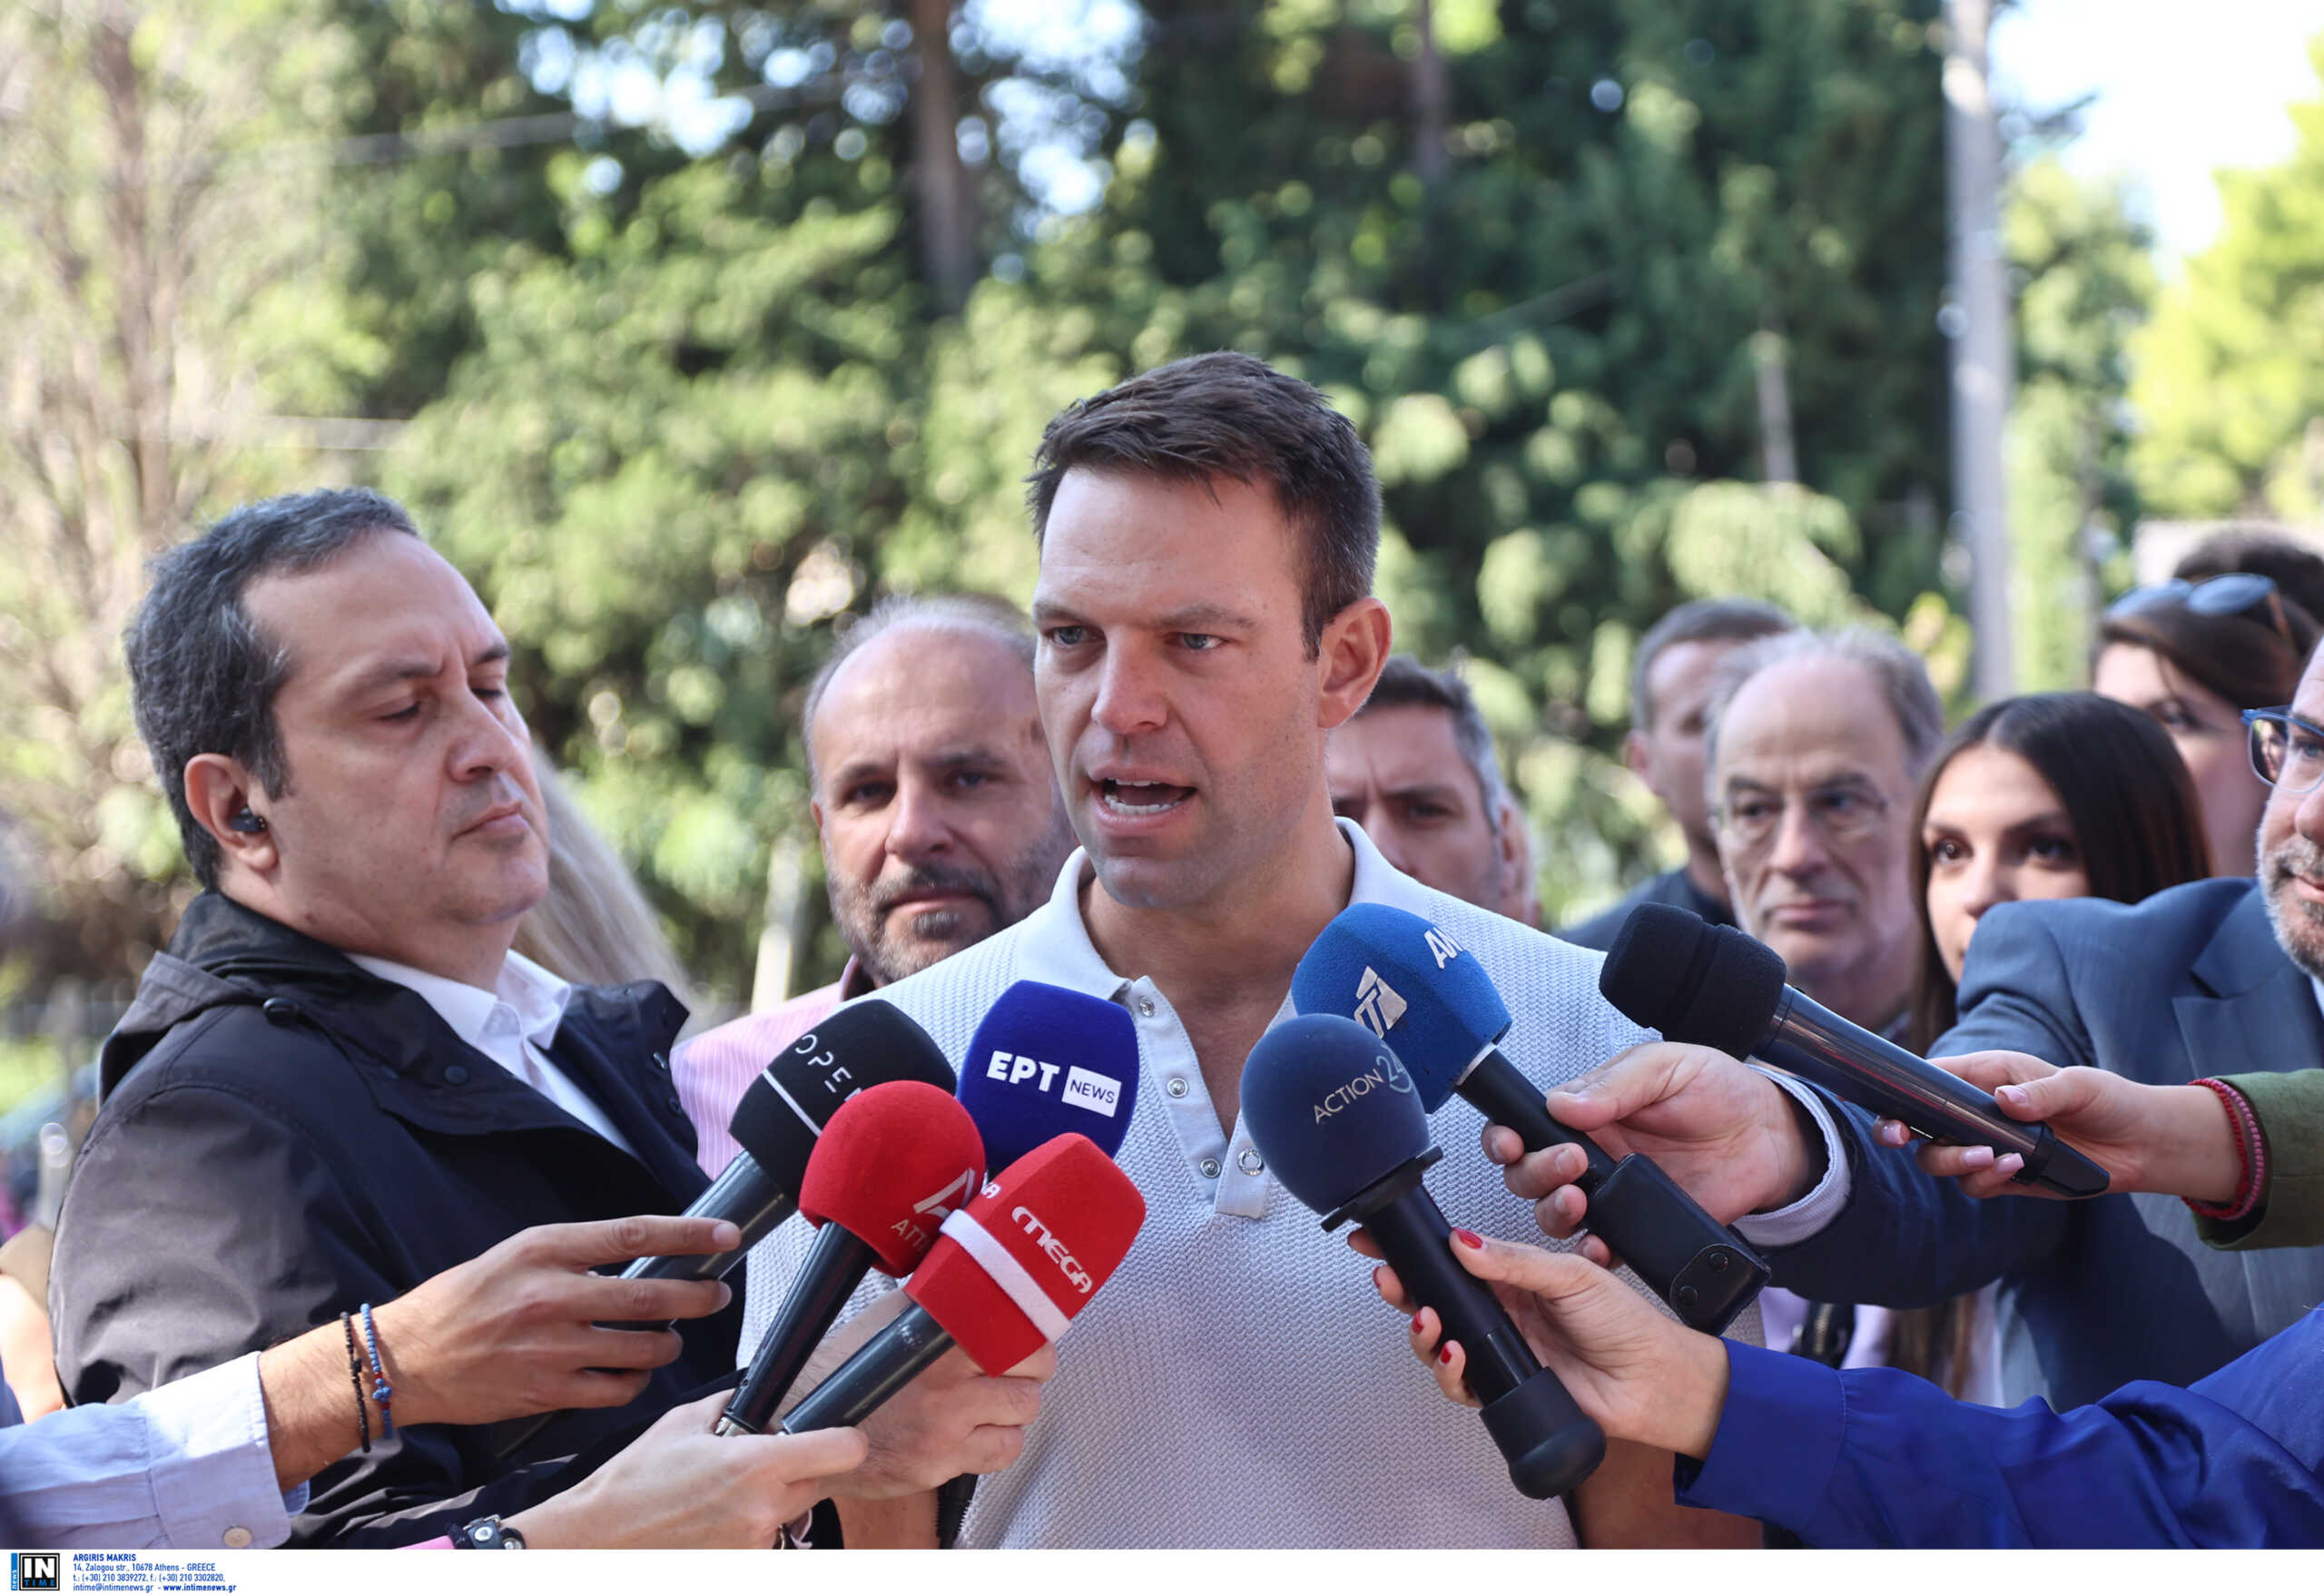 ΣΥΡΙΖΑ: Νέες γκρίνιες μετά την πανωλεθρία και στις αυτοδιοικητικές – Ο «μοναχικός αγώνας» Ζαχαριάδη και ο αναστοχασμός